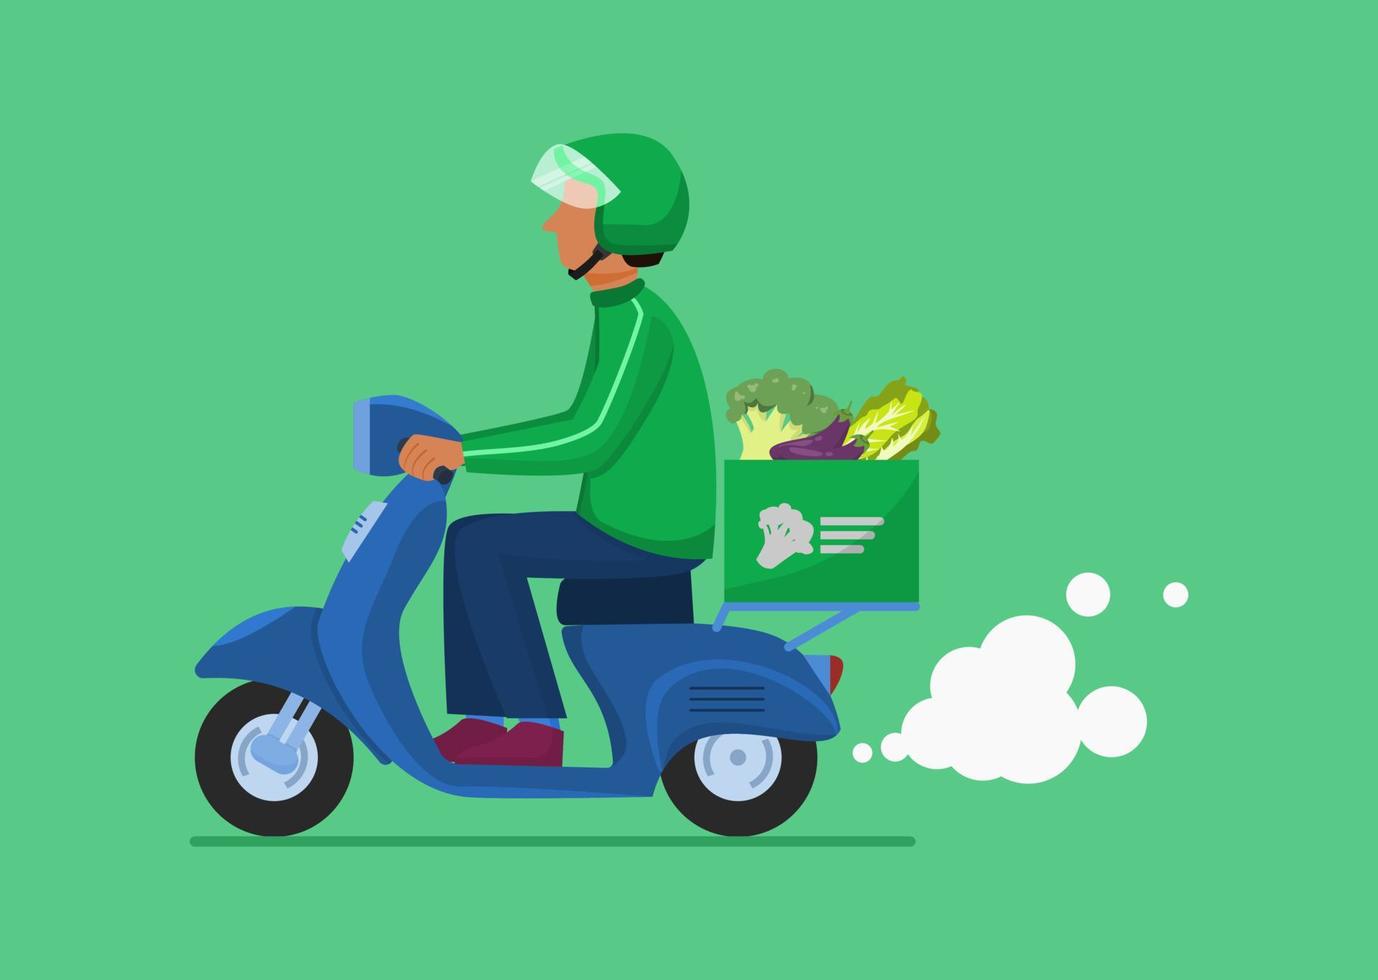 groente levering motorfiets. koerier rijdt op motorfiets en bezorgt groenten aan klant vector